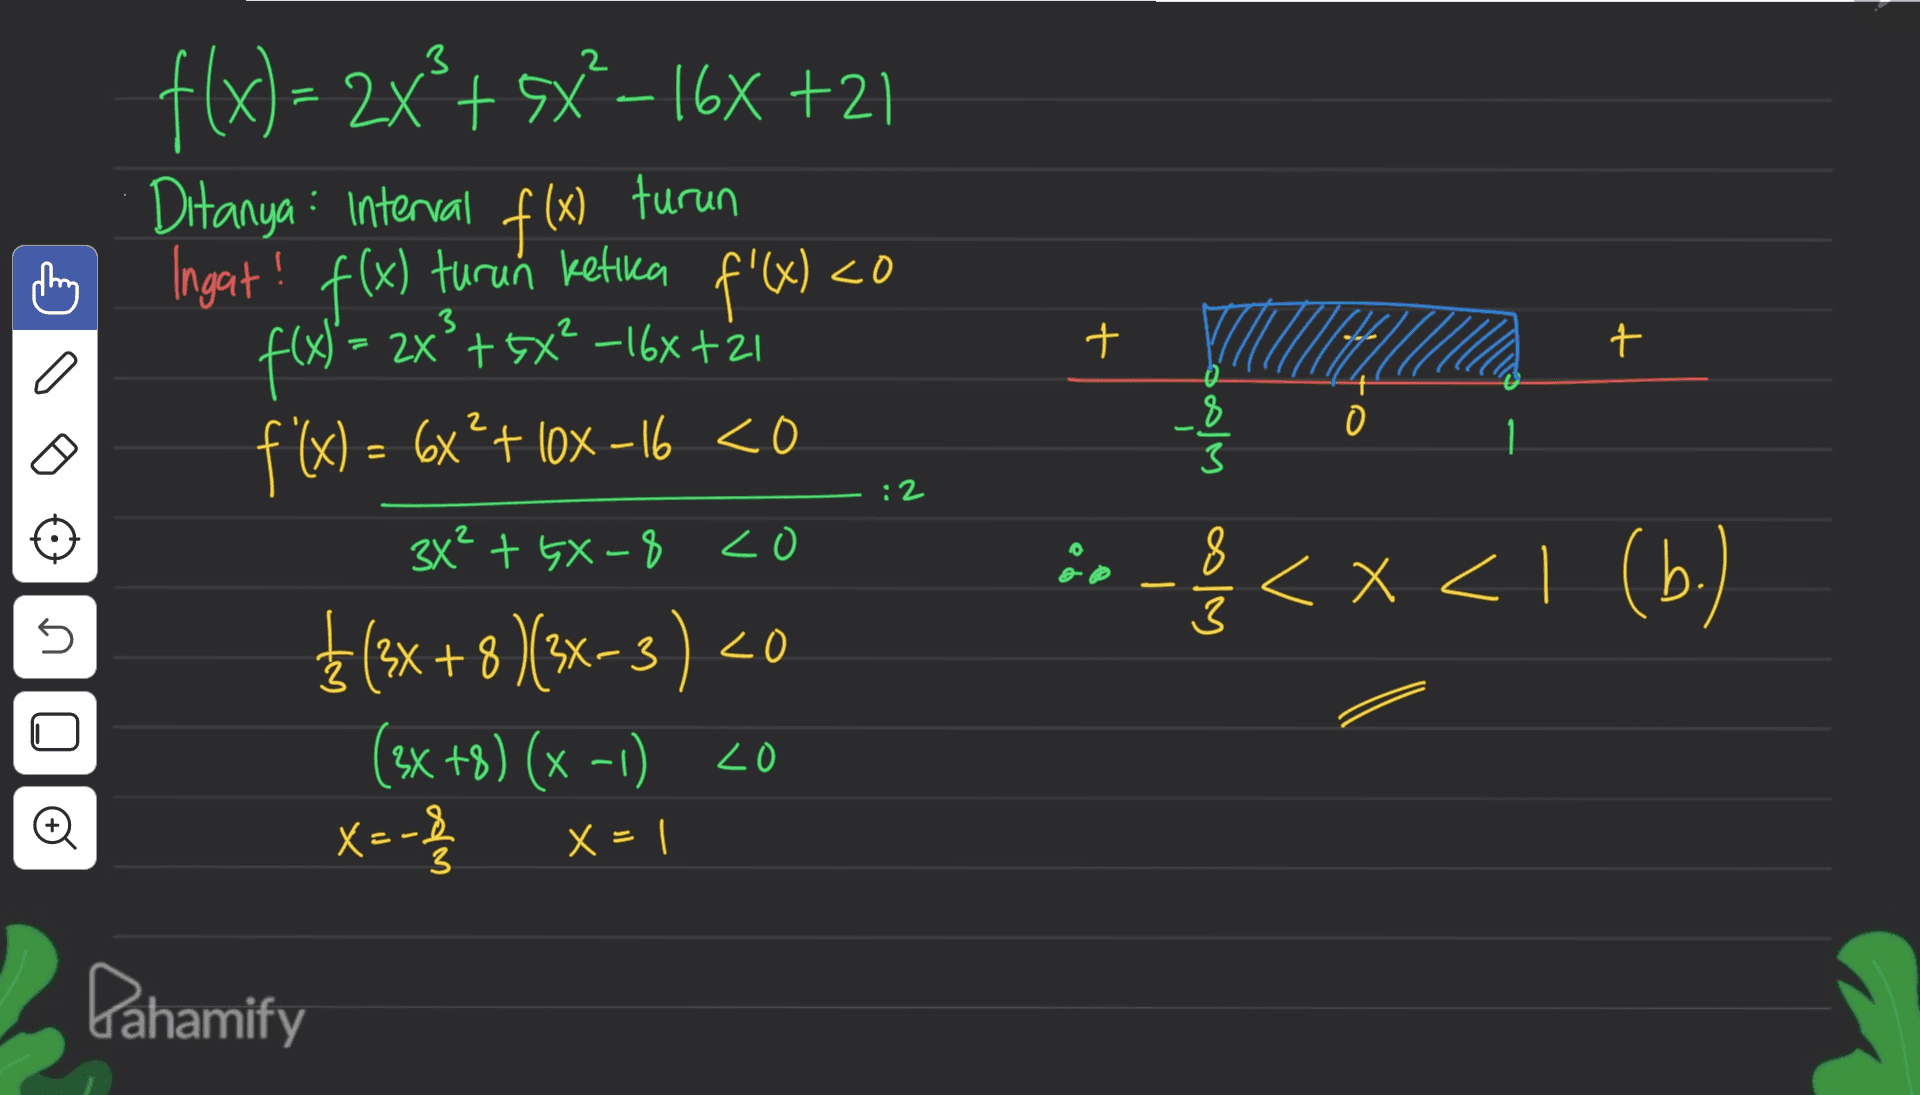 t t f(x) = 2x'+sx?-16x +27 Ditanya : interval f(x) turun Ingat! f(x) turun ketika f'(x) <0 f(x) = 2x² + 5x² - 16x t²i f(x) = 6x?+ 10x –16 <o 3x² + GX-8 co }(3x +8 }(3x-3) <0 (2x +8) (x-1) 20 TULEE in-<x<1 (b) 3 :2 golem oly U Oo X=-8 x=1 3 Pahamify 